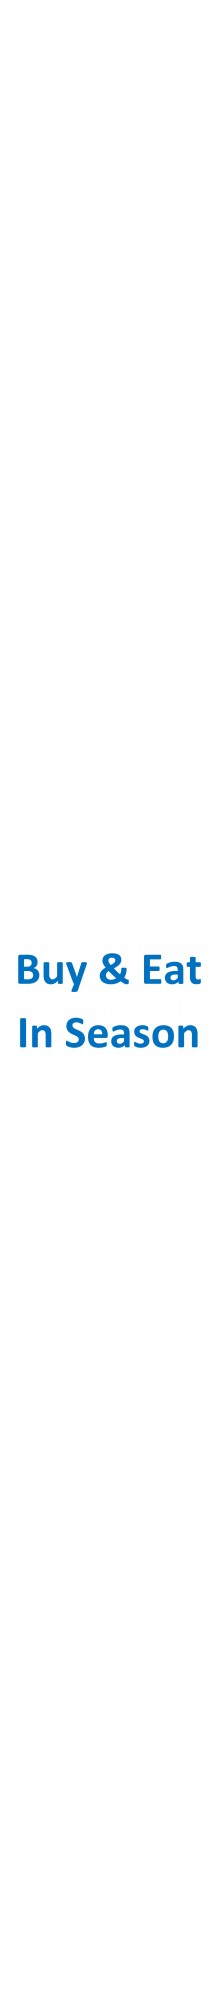 Buy & Eat In Season